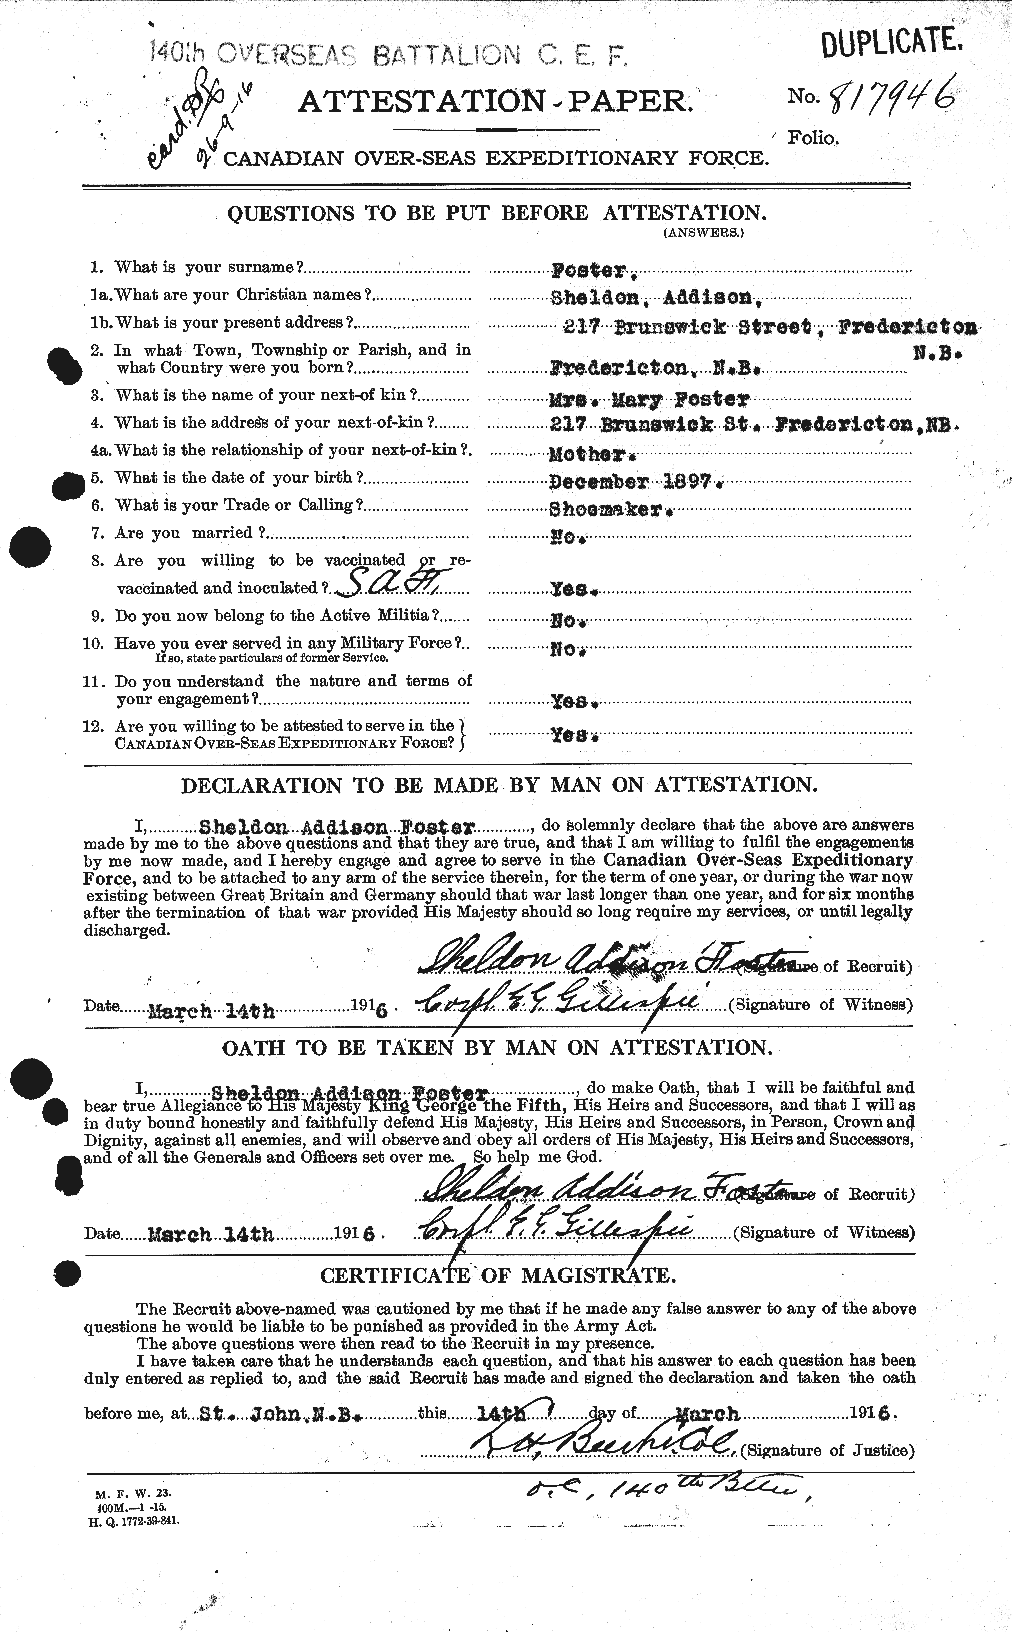 Dossiers du Personnel de la Première Guerre mondiale - CEC 335207a